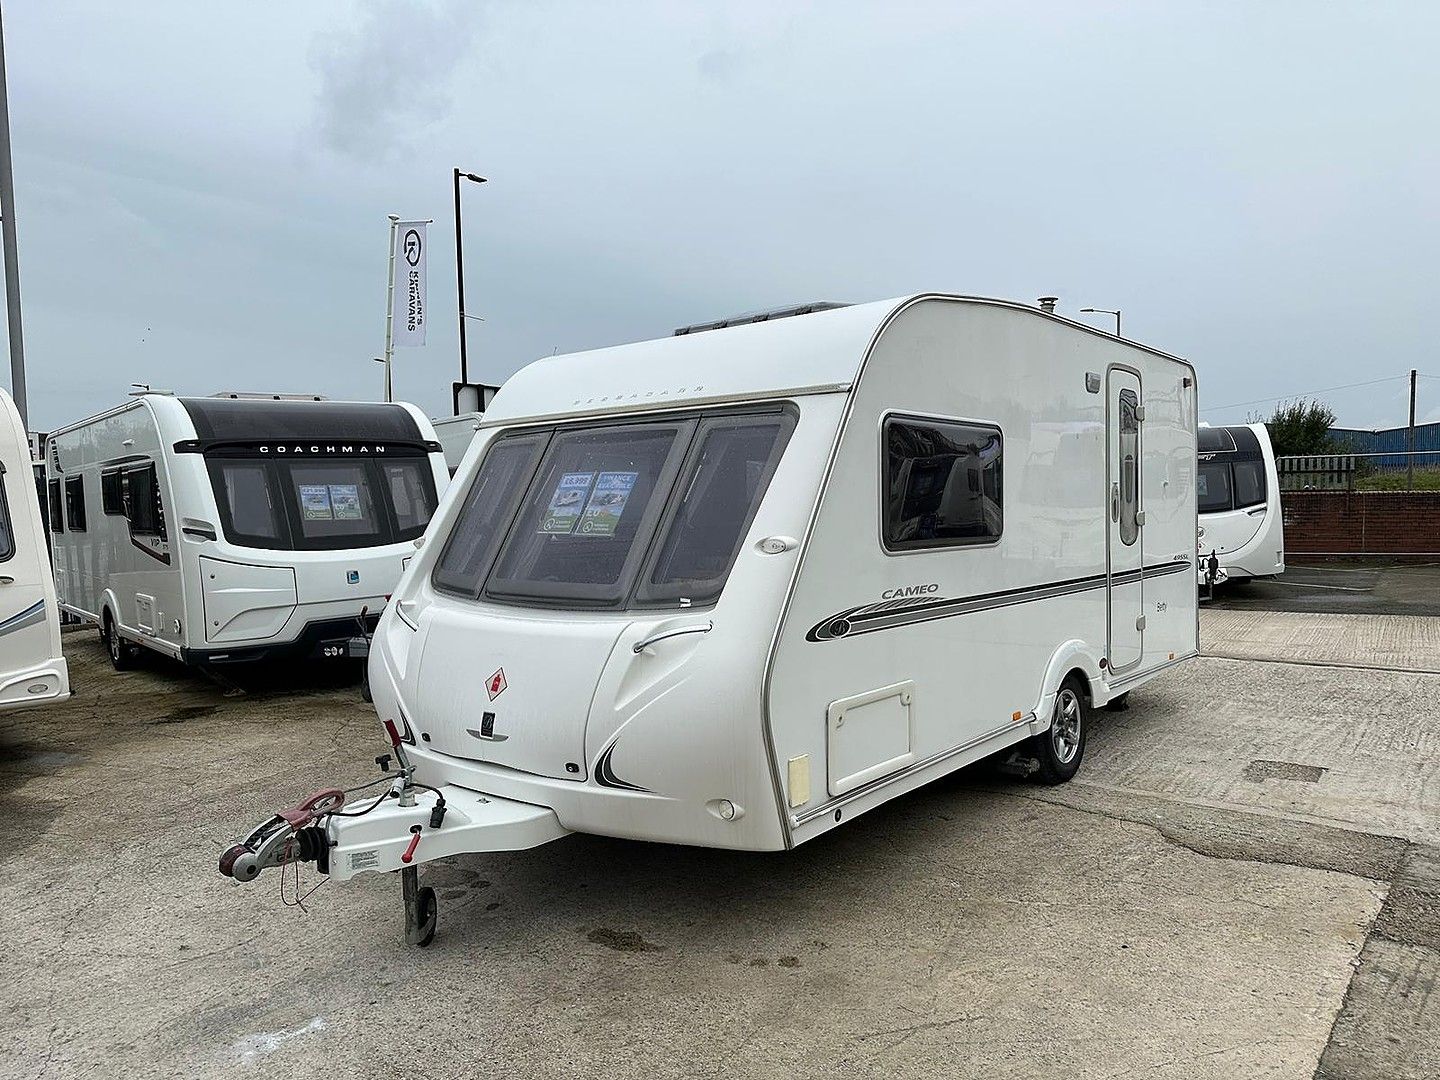 BessacarrCameo 4955LTouring Caravan for sale